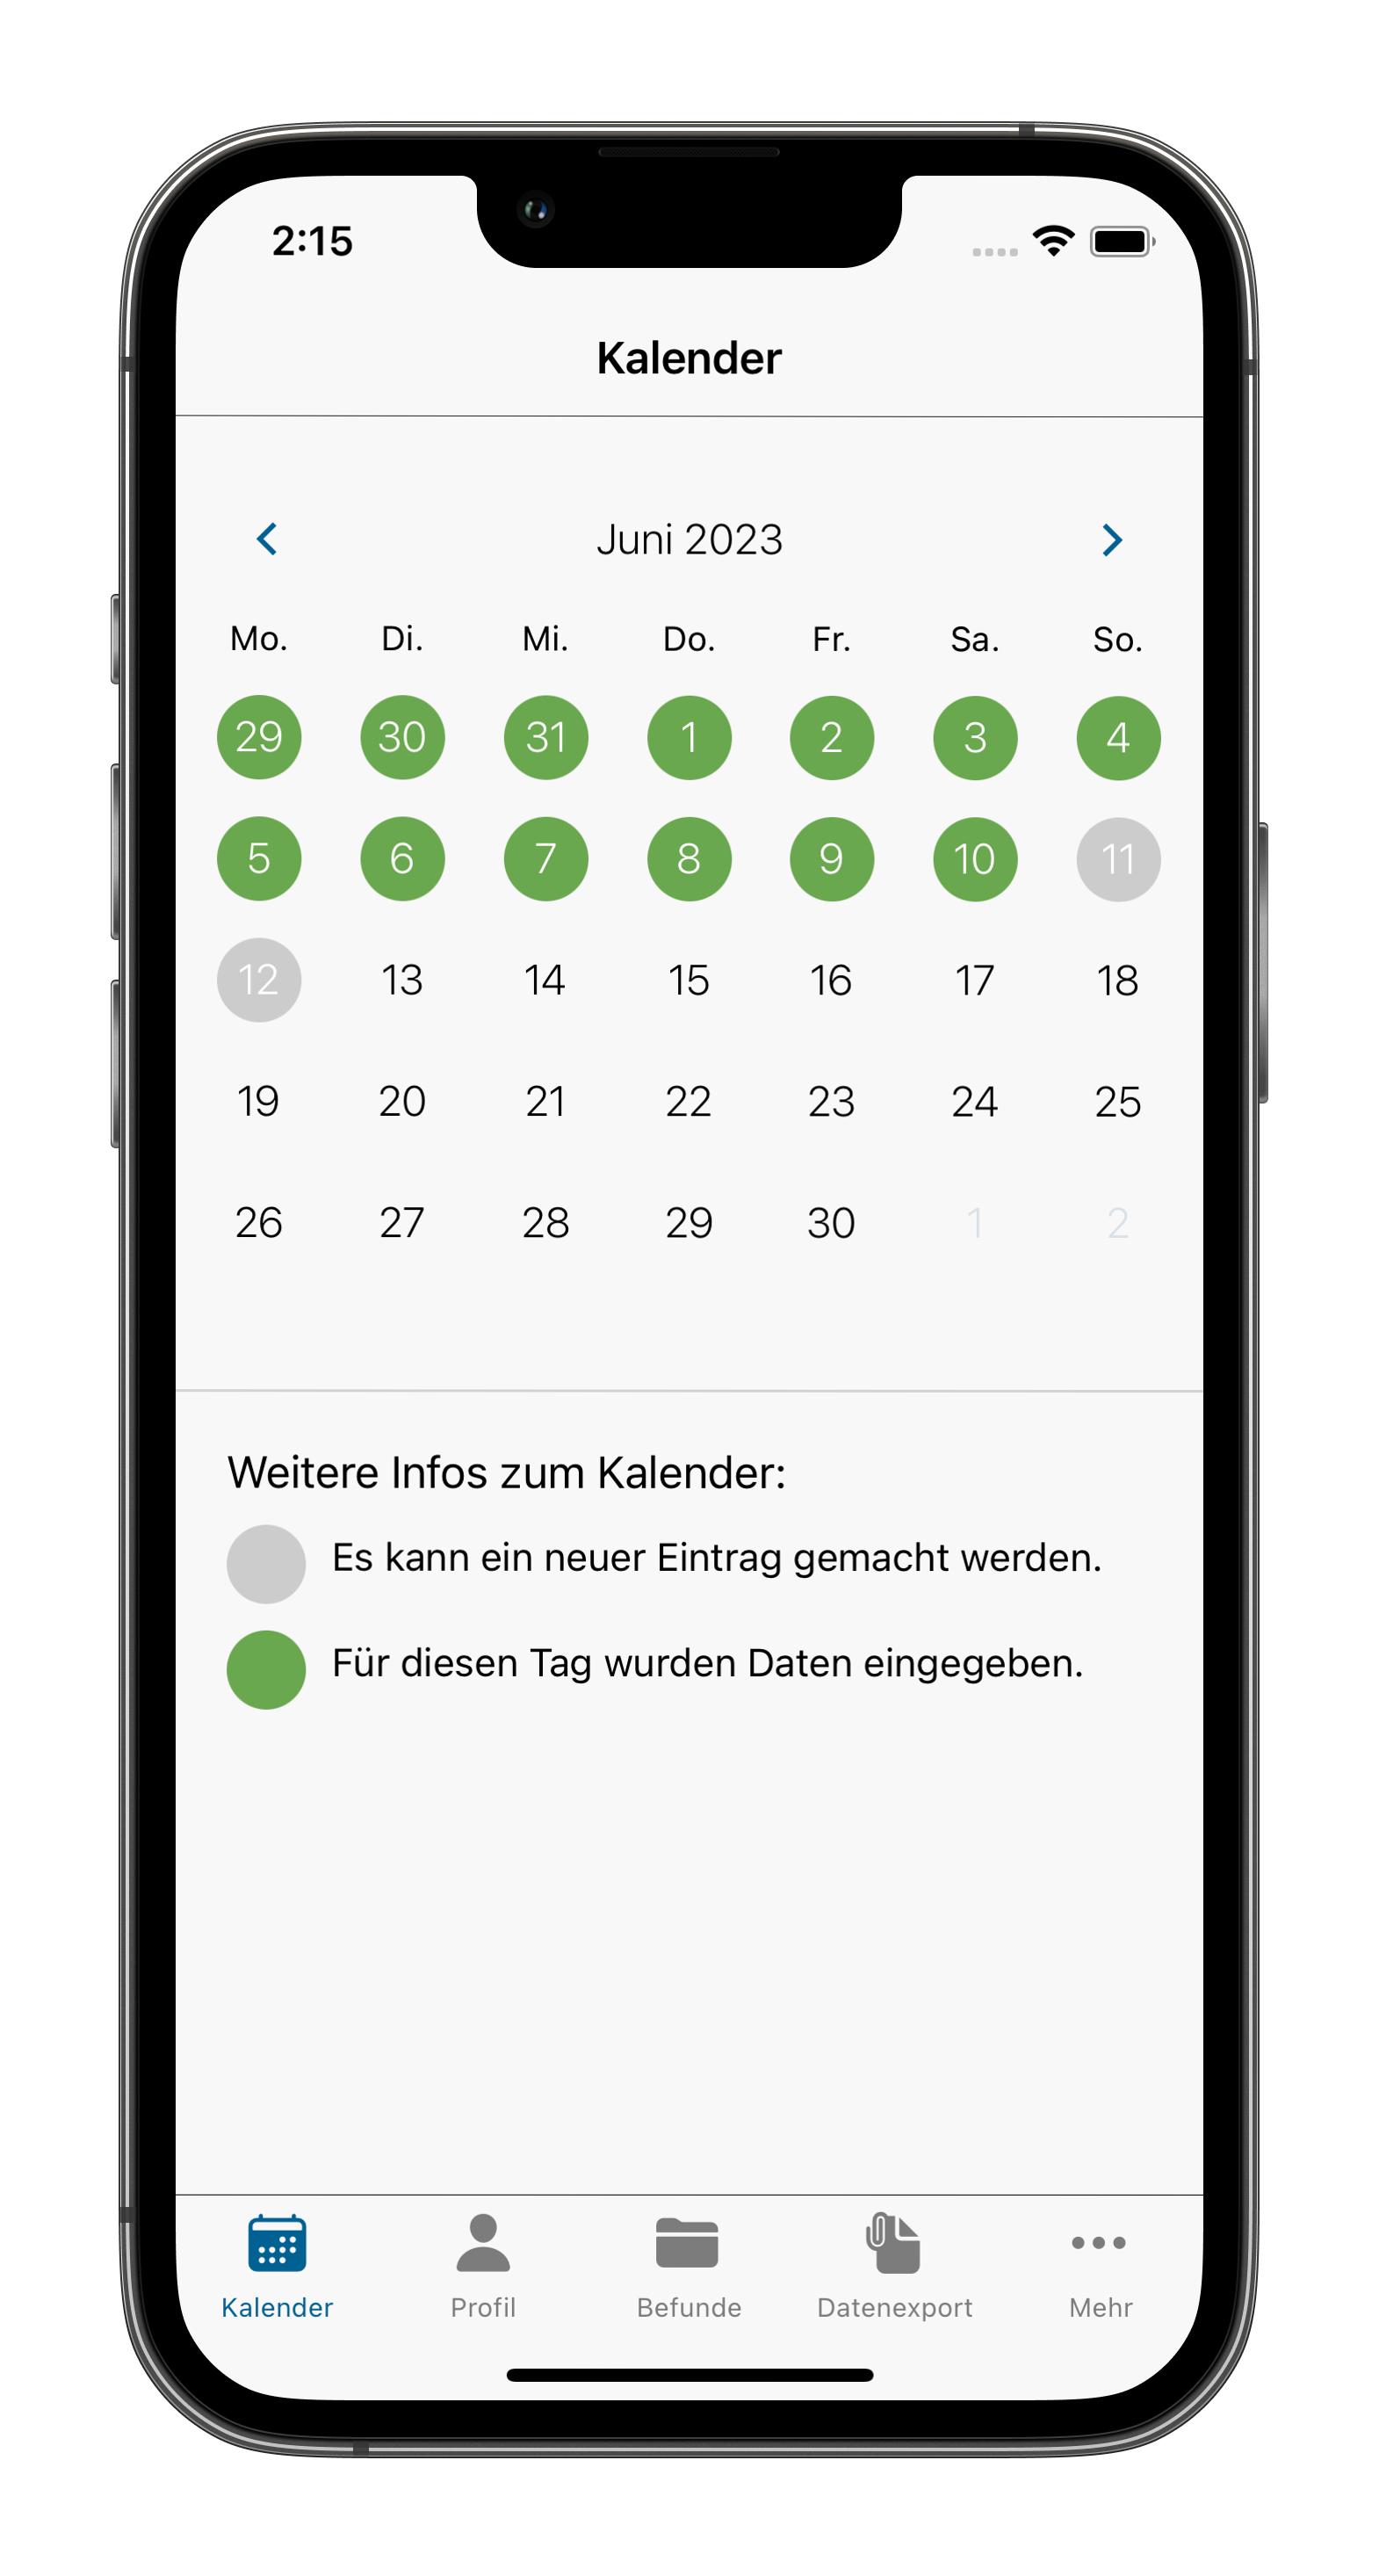 Kalenderansicht der App mit ausgefüllten Kalendereinträgen